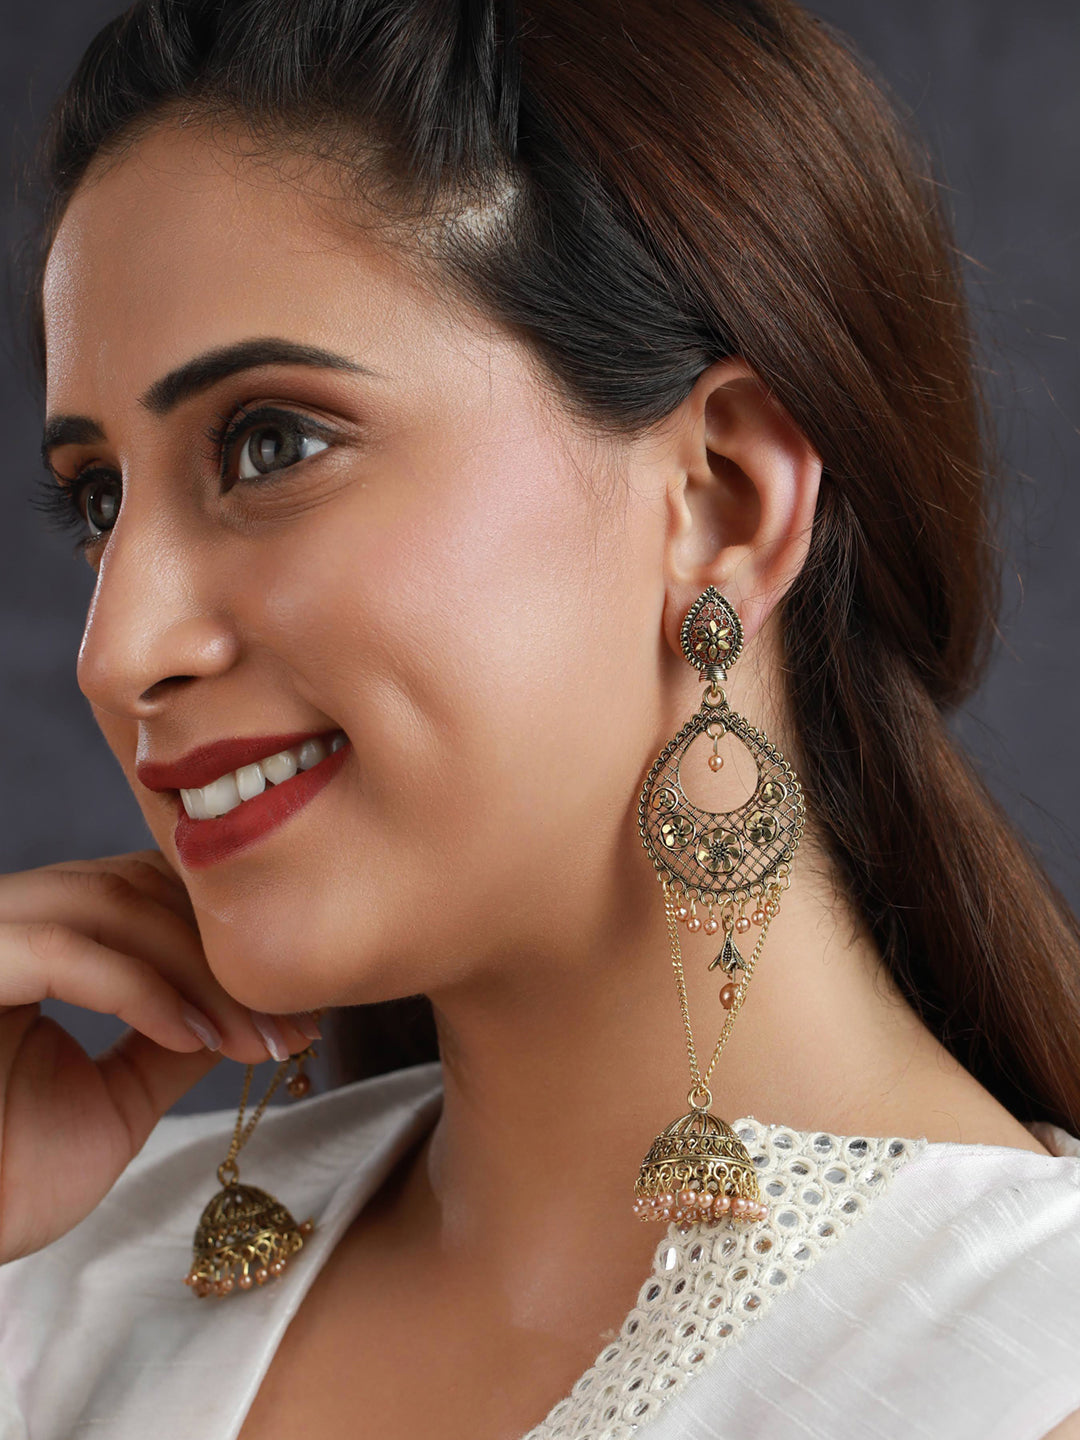 Priyaasi Floral Gold Plated Long Drop Jhumka Earrings